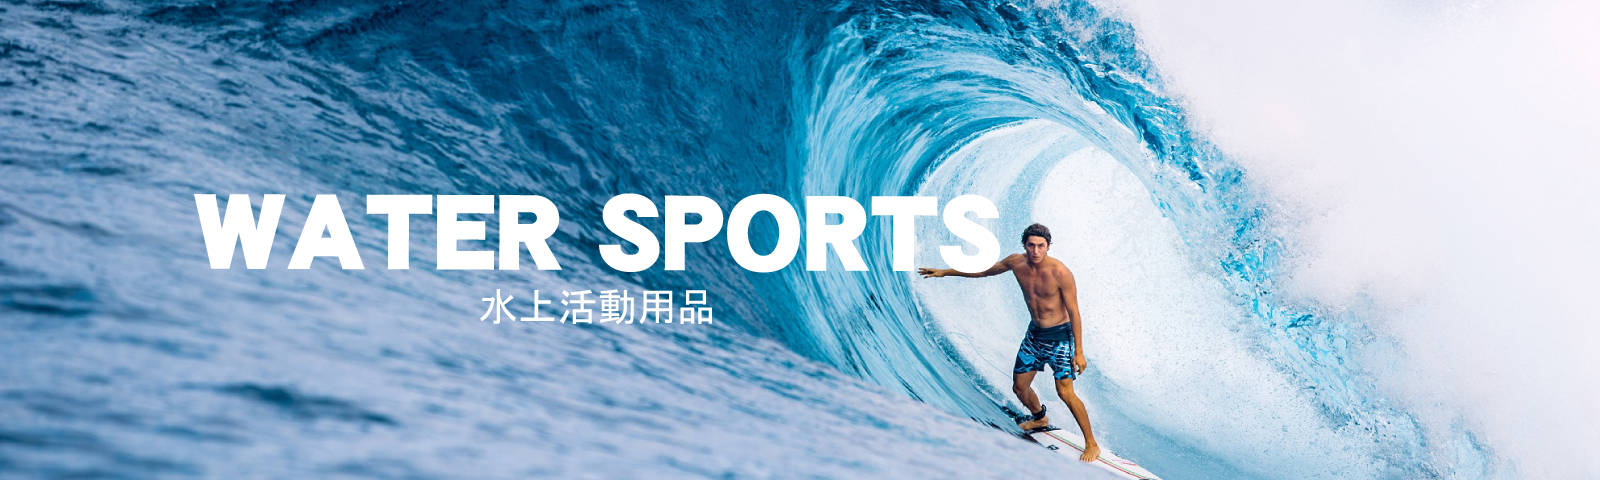 水上活動 / Water Sports